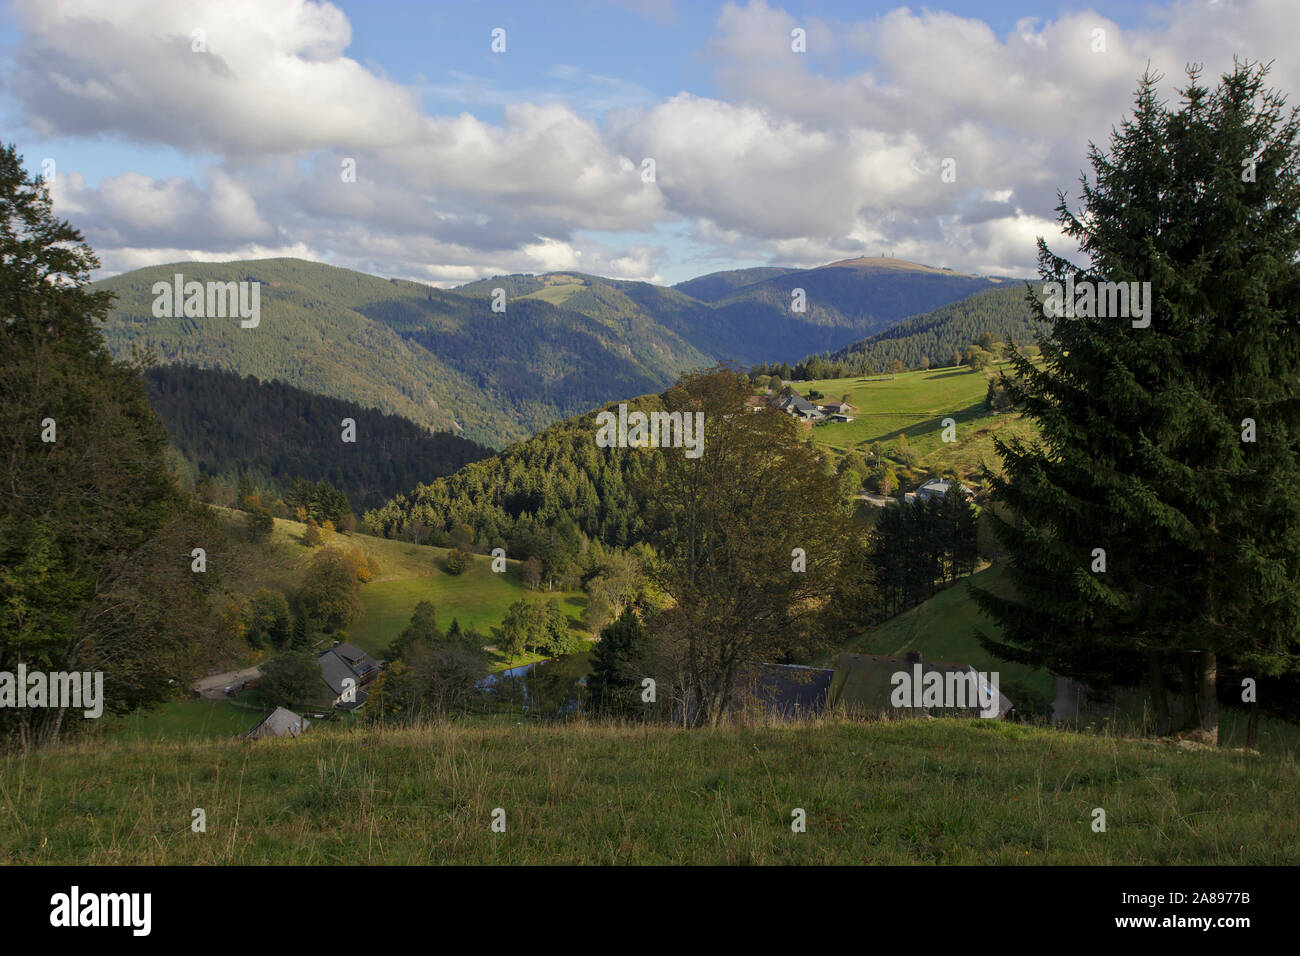 Vista desde Schauinsland a Feldberg, Selva Negra, Alemania Foto de stock